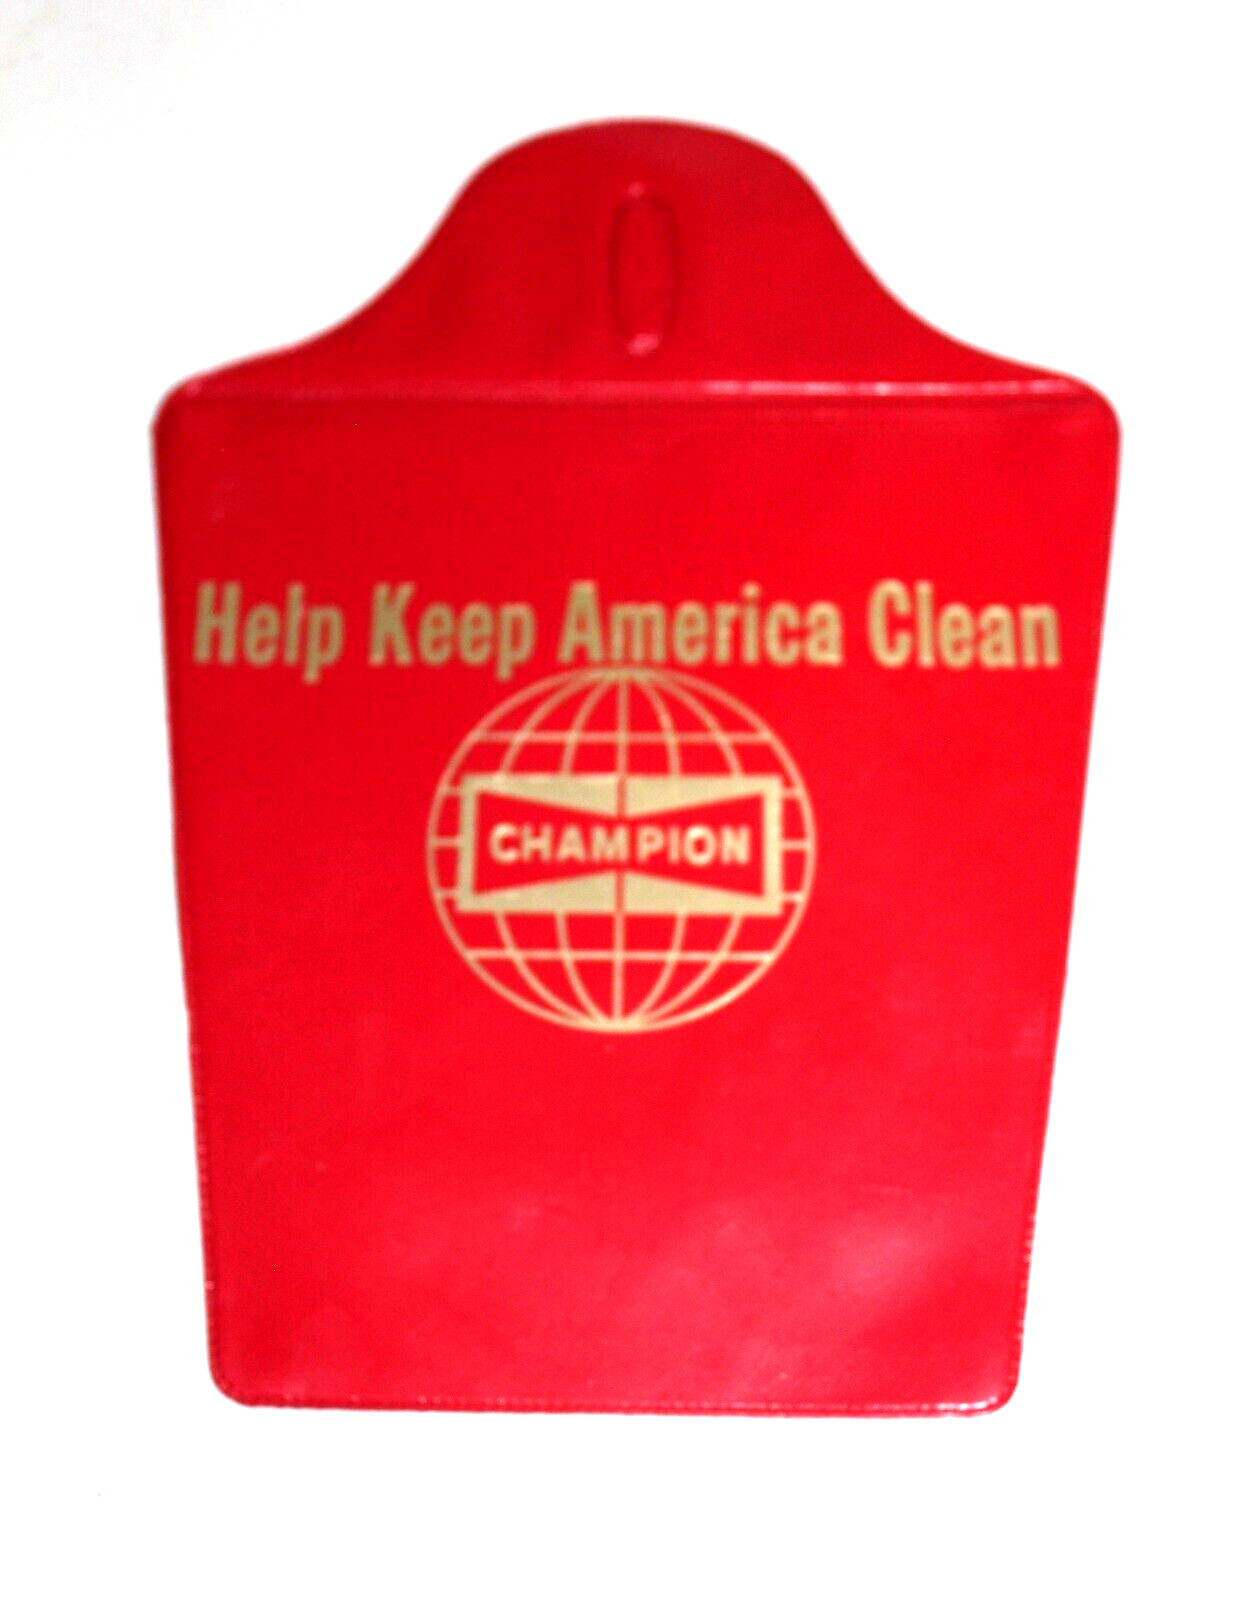 1966 CHAMPION SPARK PLUGS HELP KEEP AMERICA CLEAN VINTAGE AUTO TRASH BAG RARE